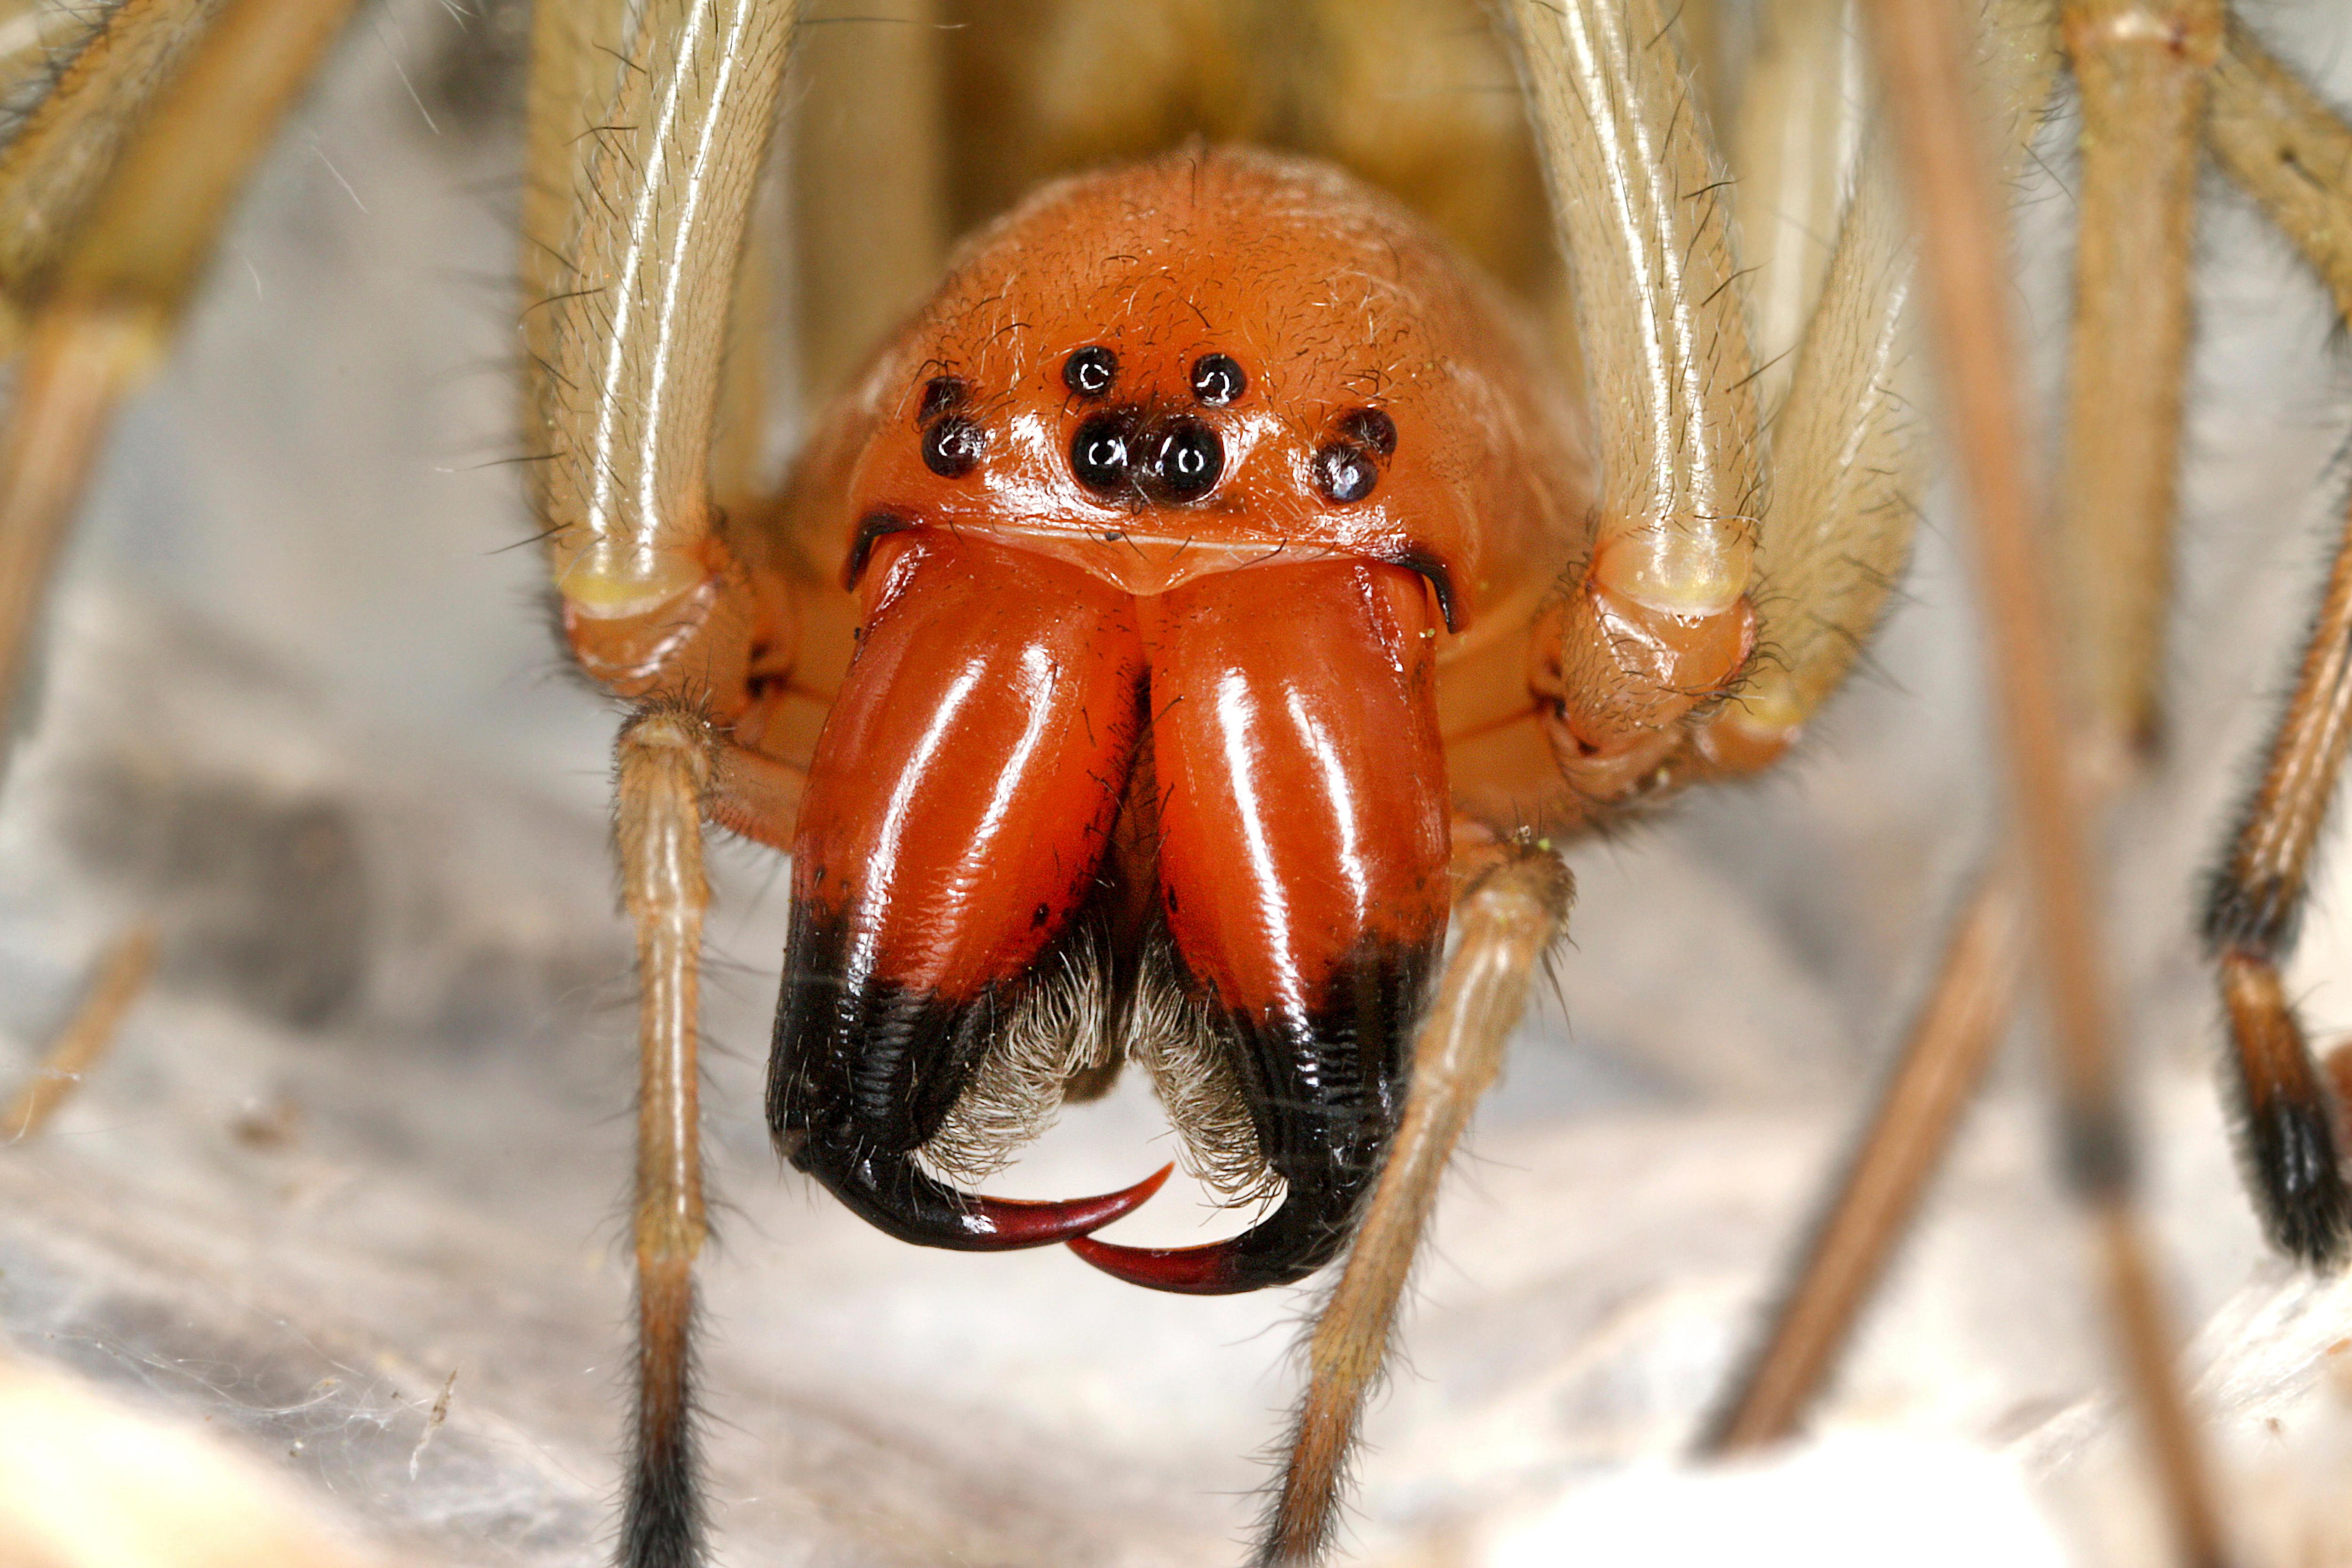 К ним не подходи: 10 самых опасных пауков в мире | Вокруг Света